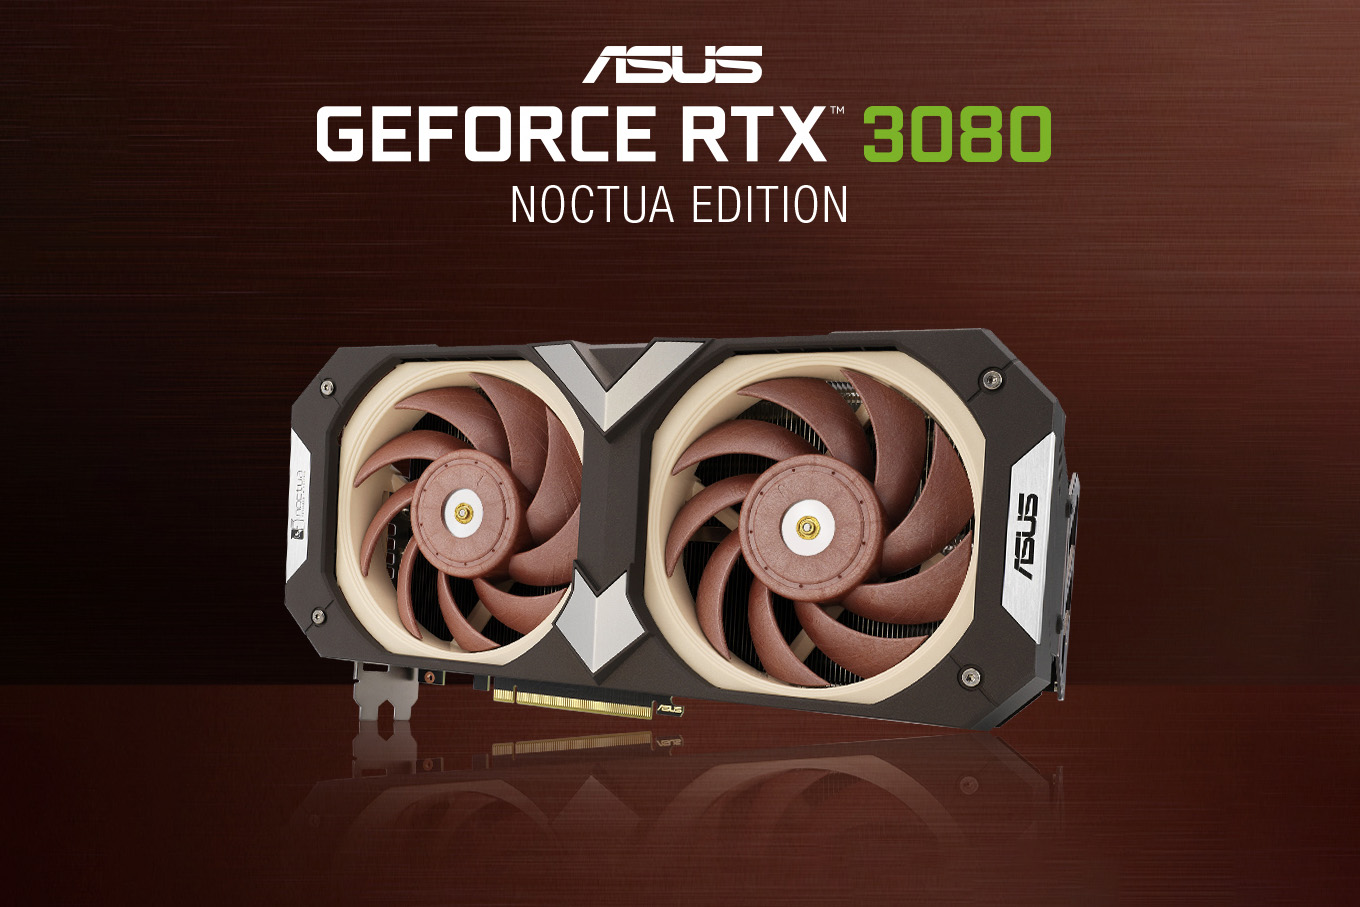 ASUS x Noctua představuje GeForce RTX 3080 Noctua Edition